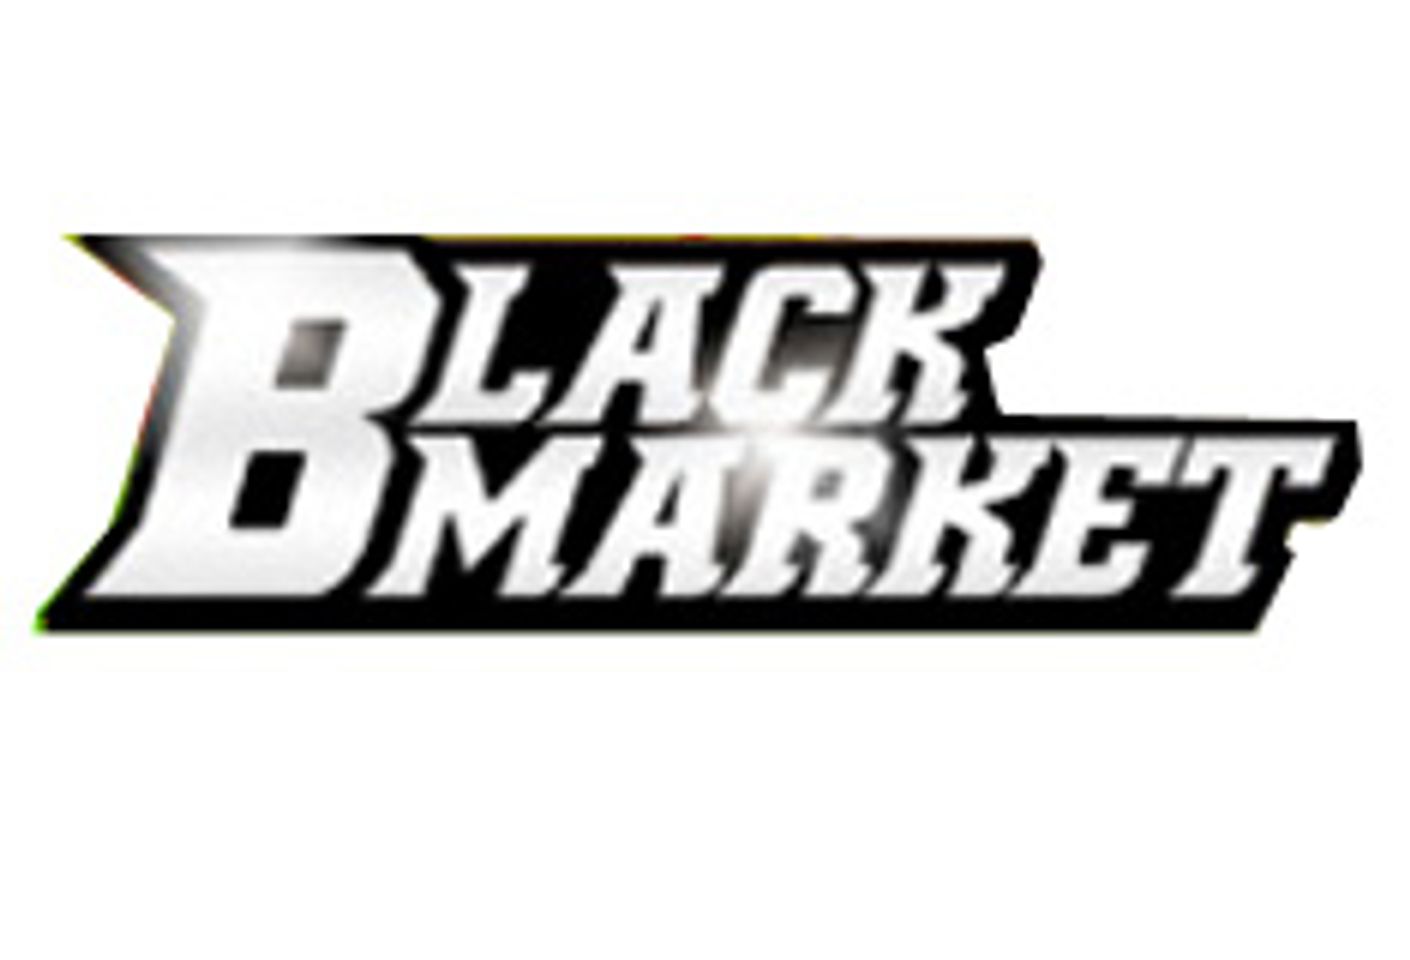 Black Market Rolls Out 'Find'Em, Trunk'Em 'N Fuck'Em'